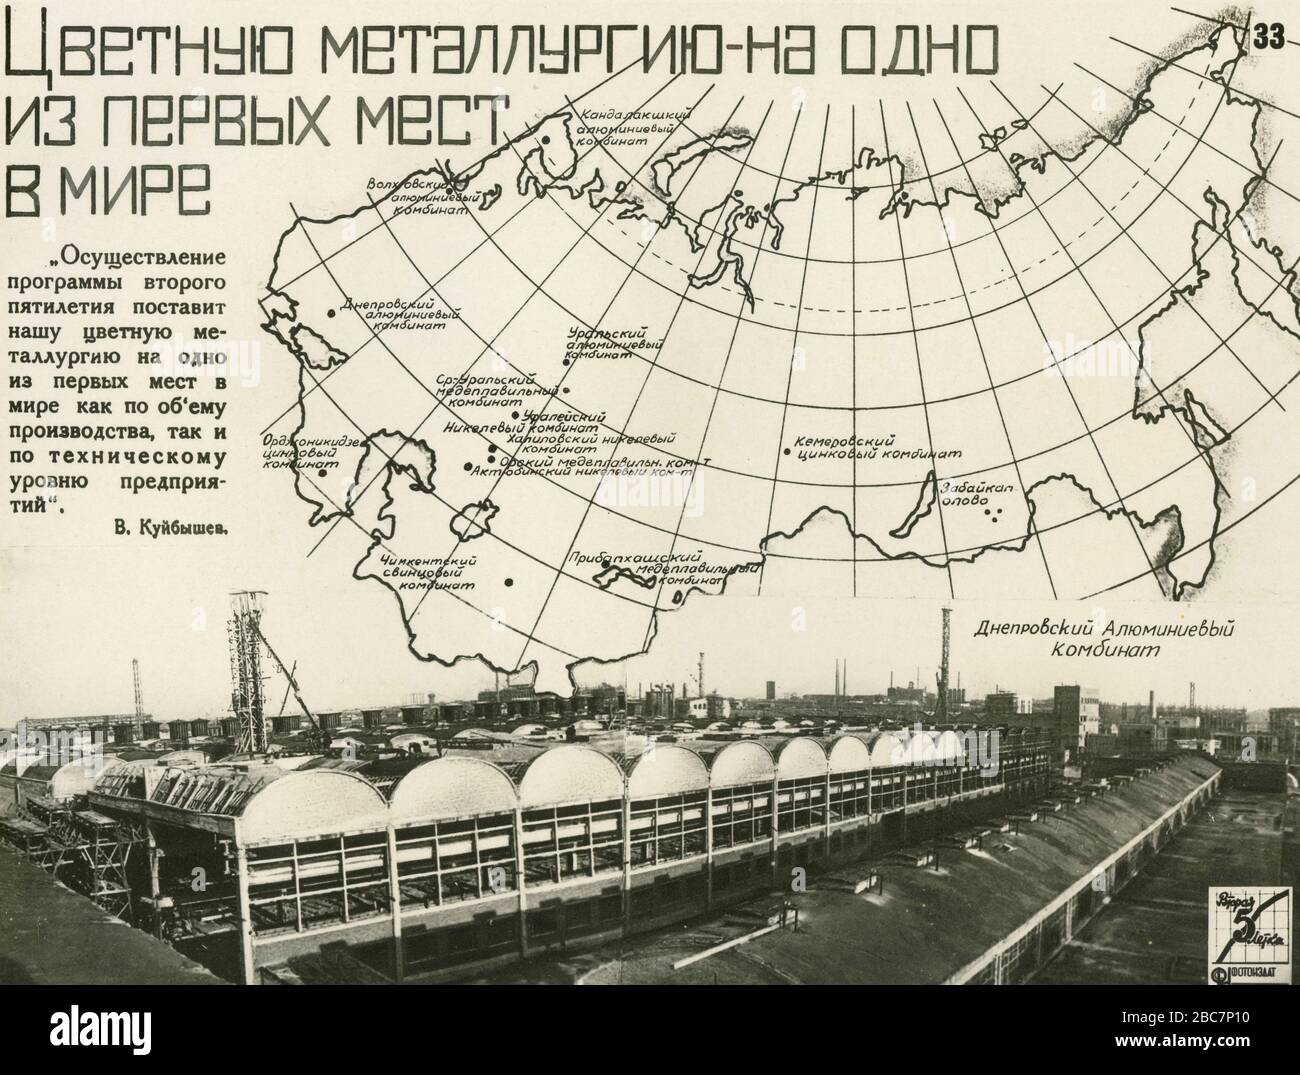 Photo de propagande du deuxième plan quinquennal de Staline pour le développement de l'économie nationale de l'Union des Républiques socialistes soviétiques (URSS), 1967 Banque D'Images